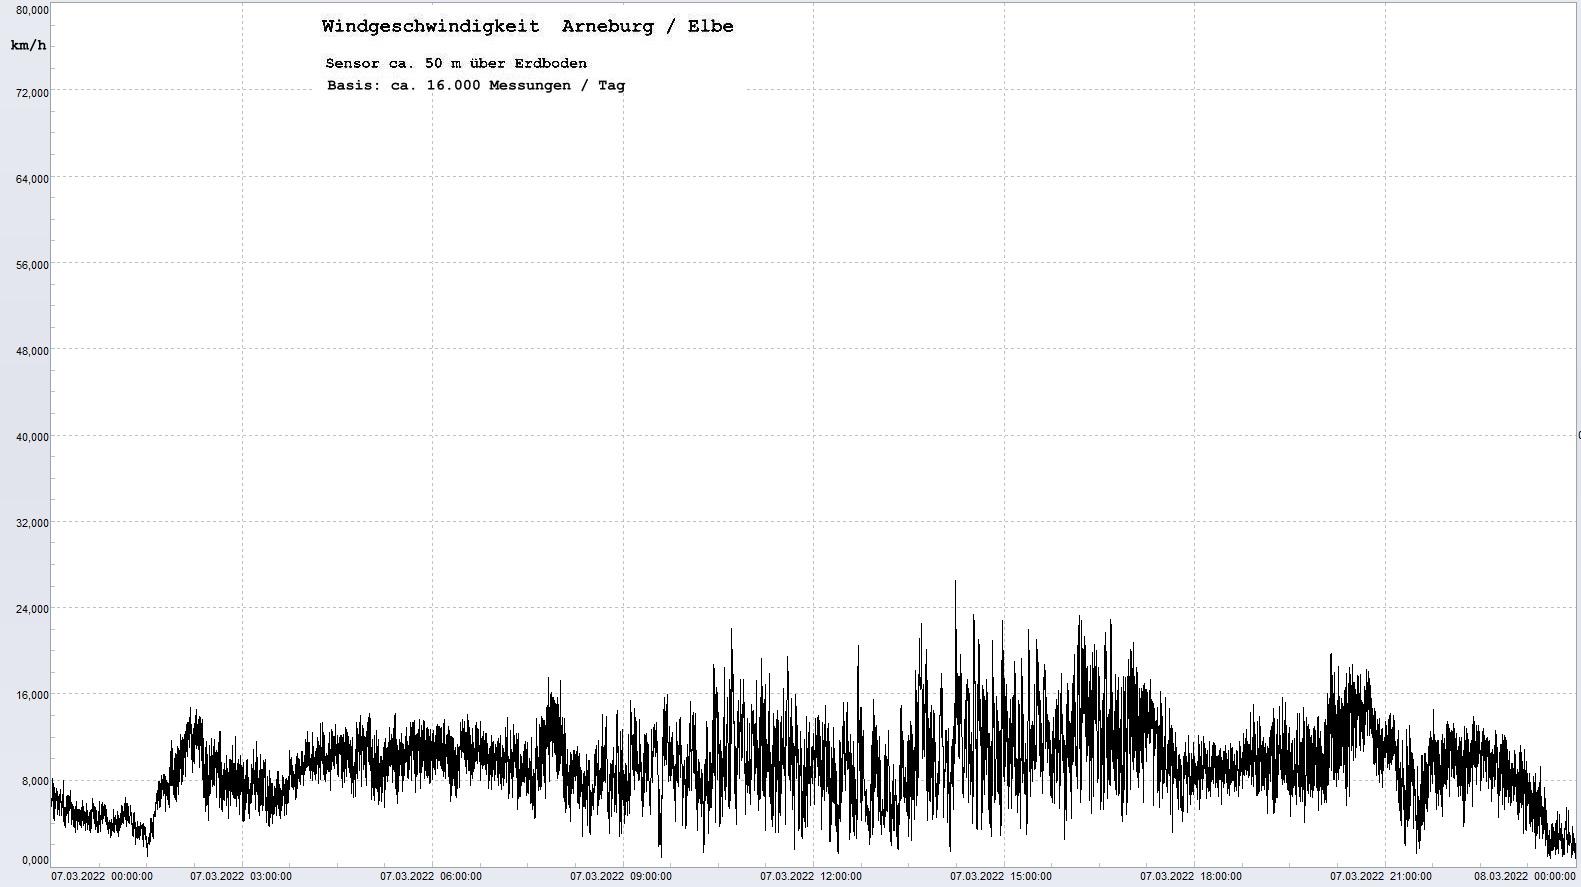 Arneburg Tages-Diagramm Winddaten, 07.03.2022
  Diagramm, Sensor auf Gebäude, ca. 50 m über Erdboden, Basis: 5s-Aufzeichnung